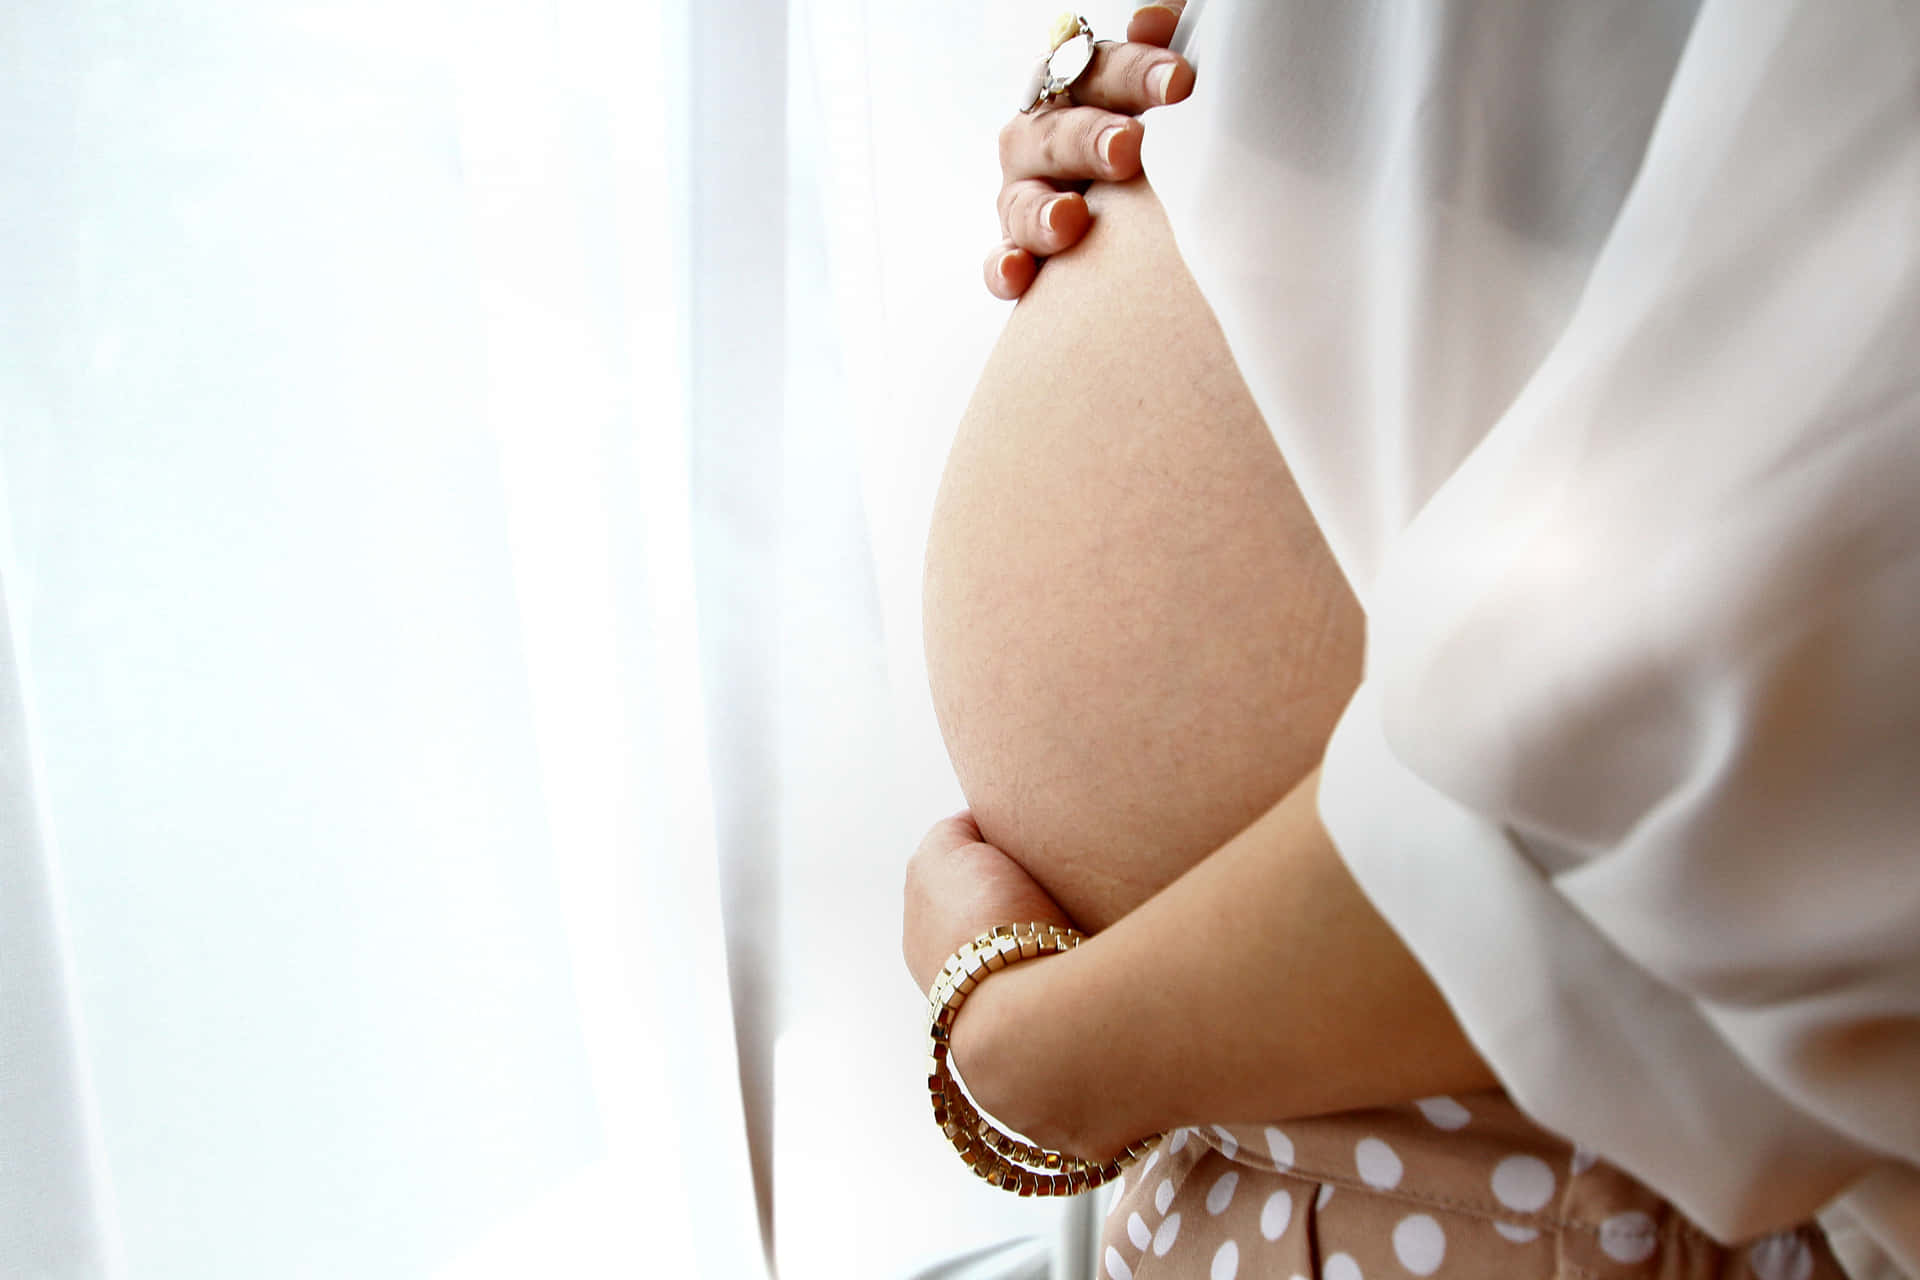 Mulhergrávida Em Close-up Mostrando A Barriga Com O Bebê. Papel de Parede